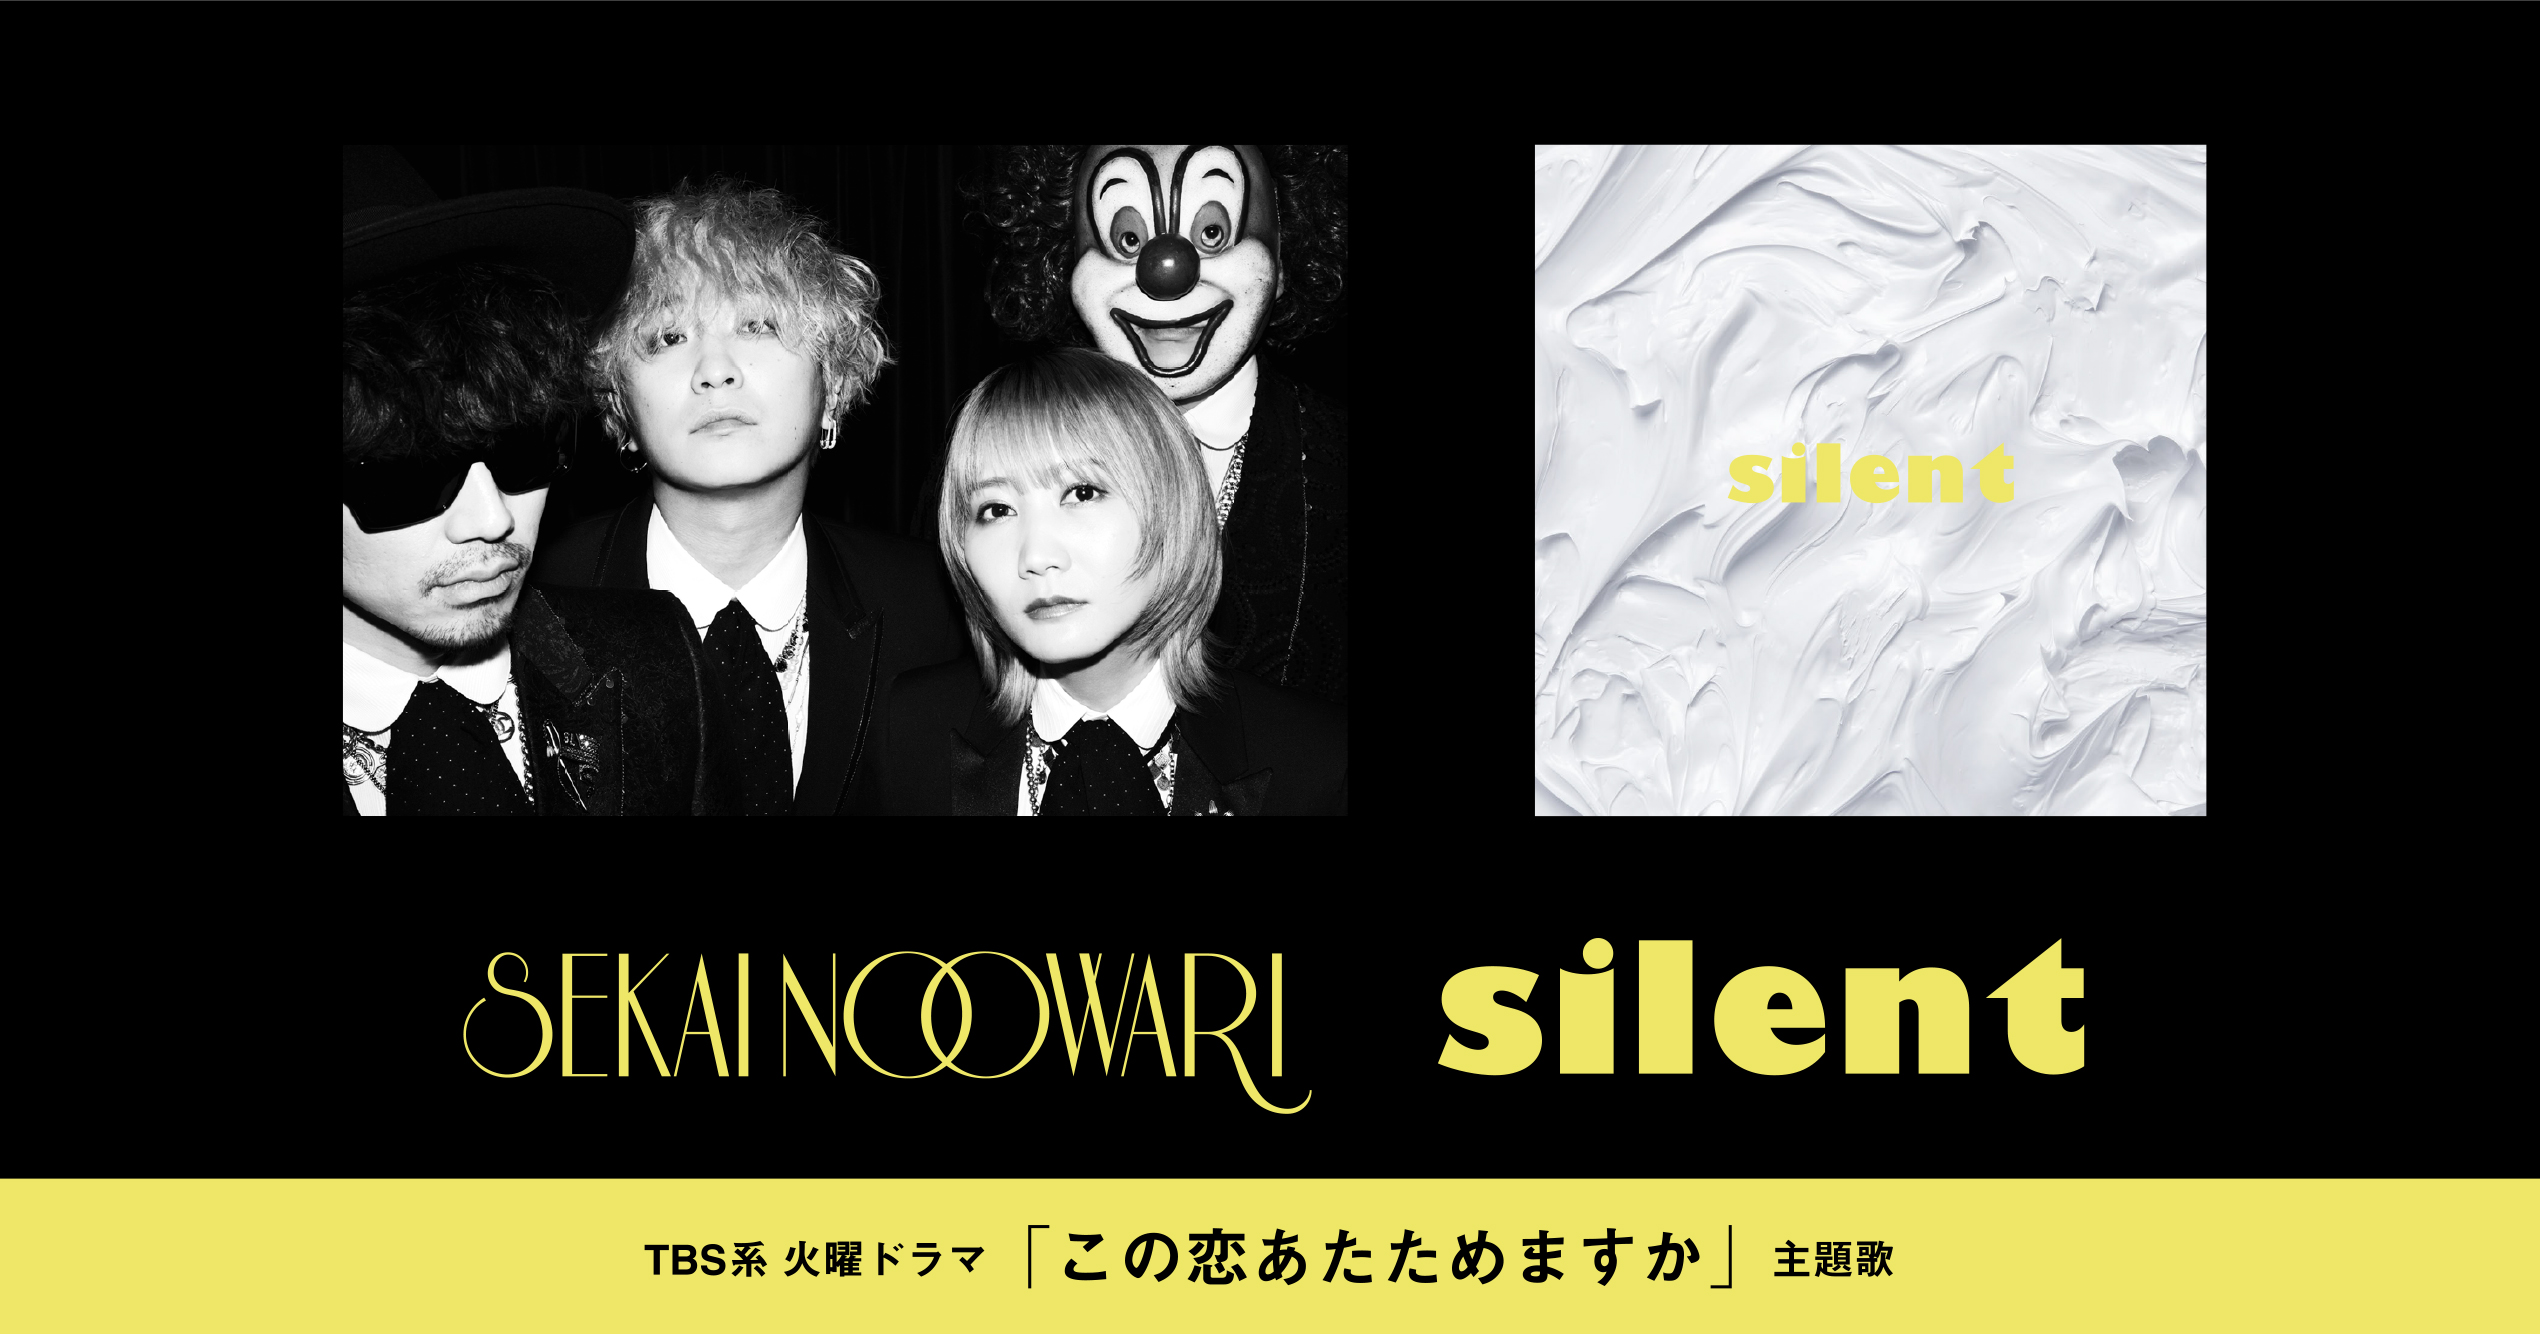 new single「silent」 - SEKAI NO OWARI